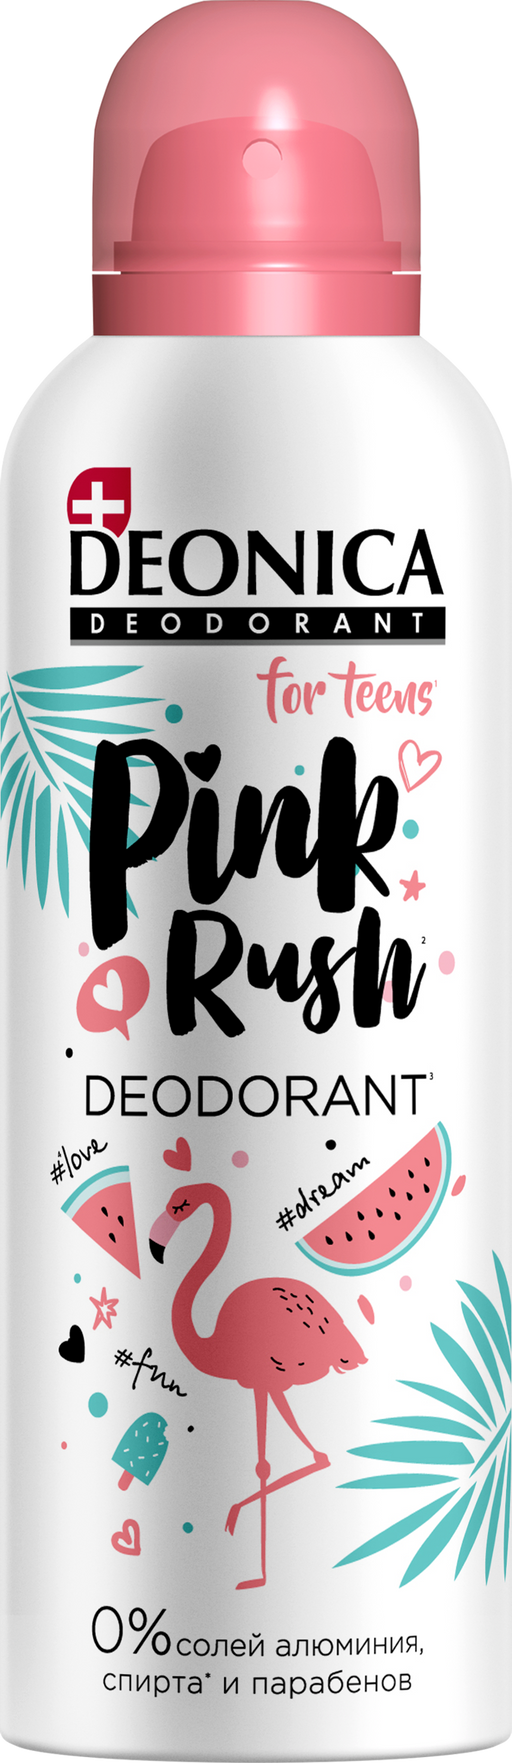 Deonica for teens дезодорант-спрей Pink Rush, спрей, 125 мл, 1 шт.